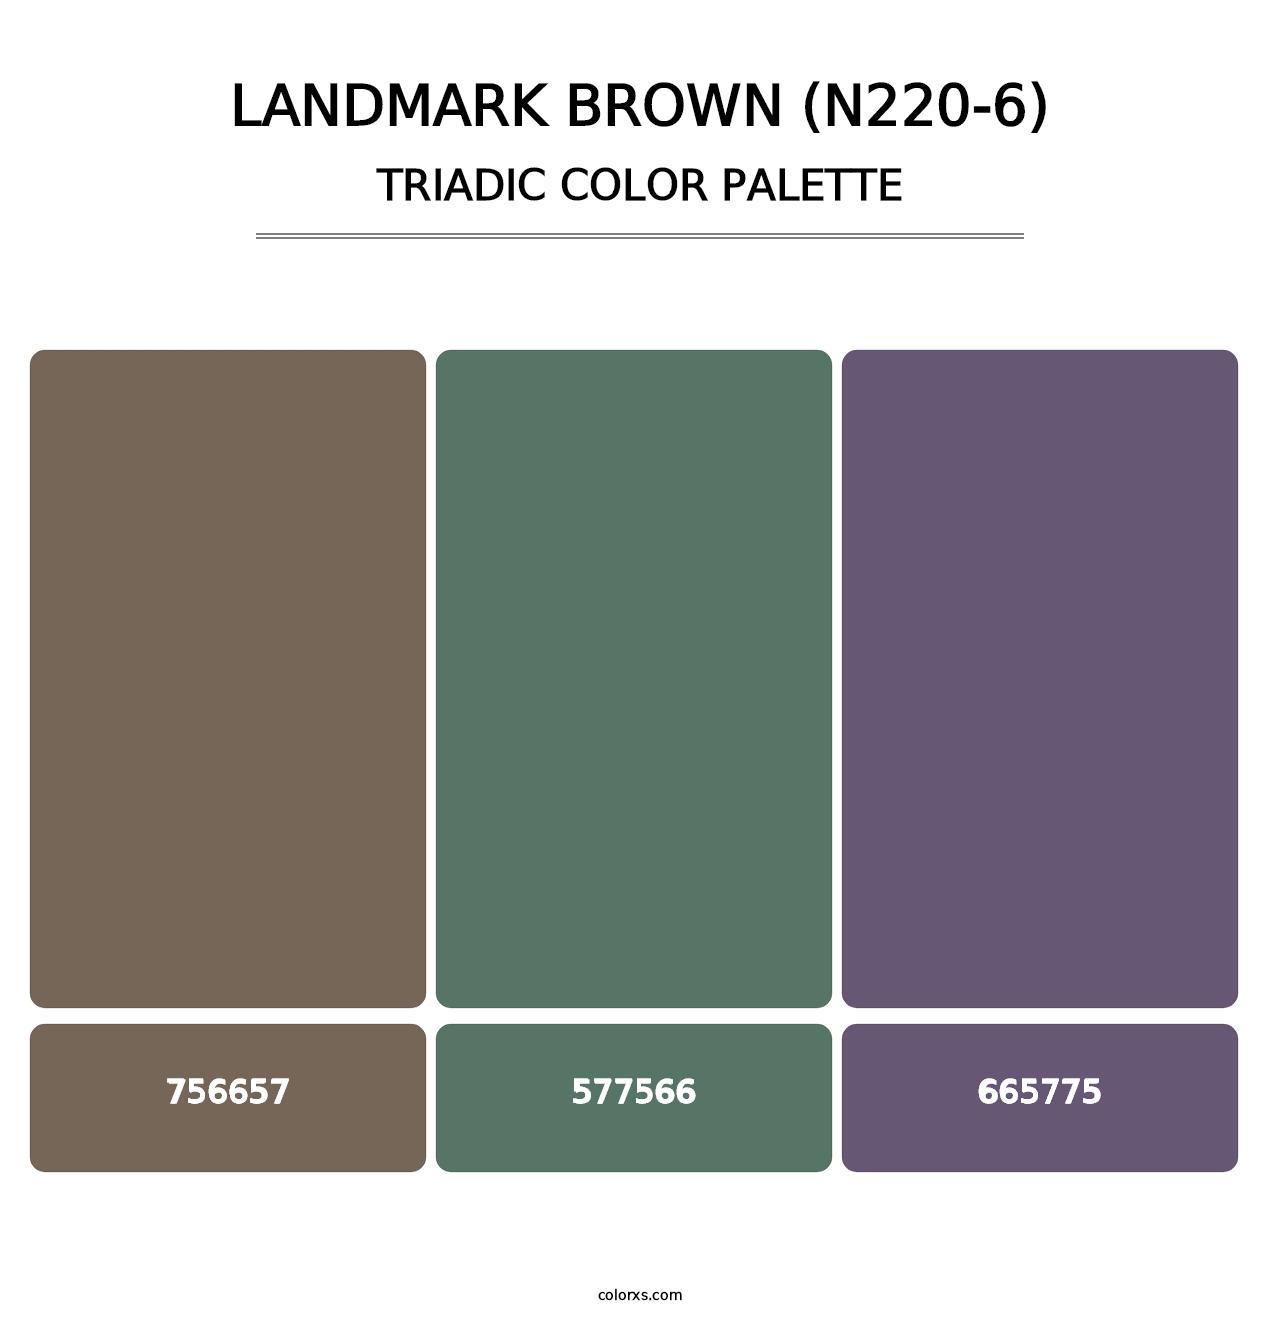 Landmark Brown (N220-6) - Triadic Color Palette